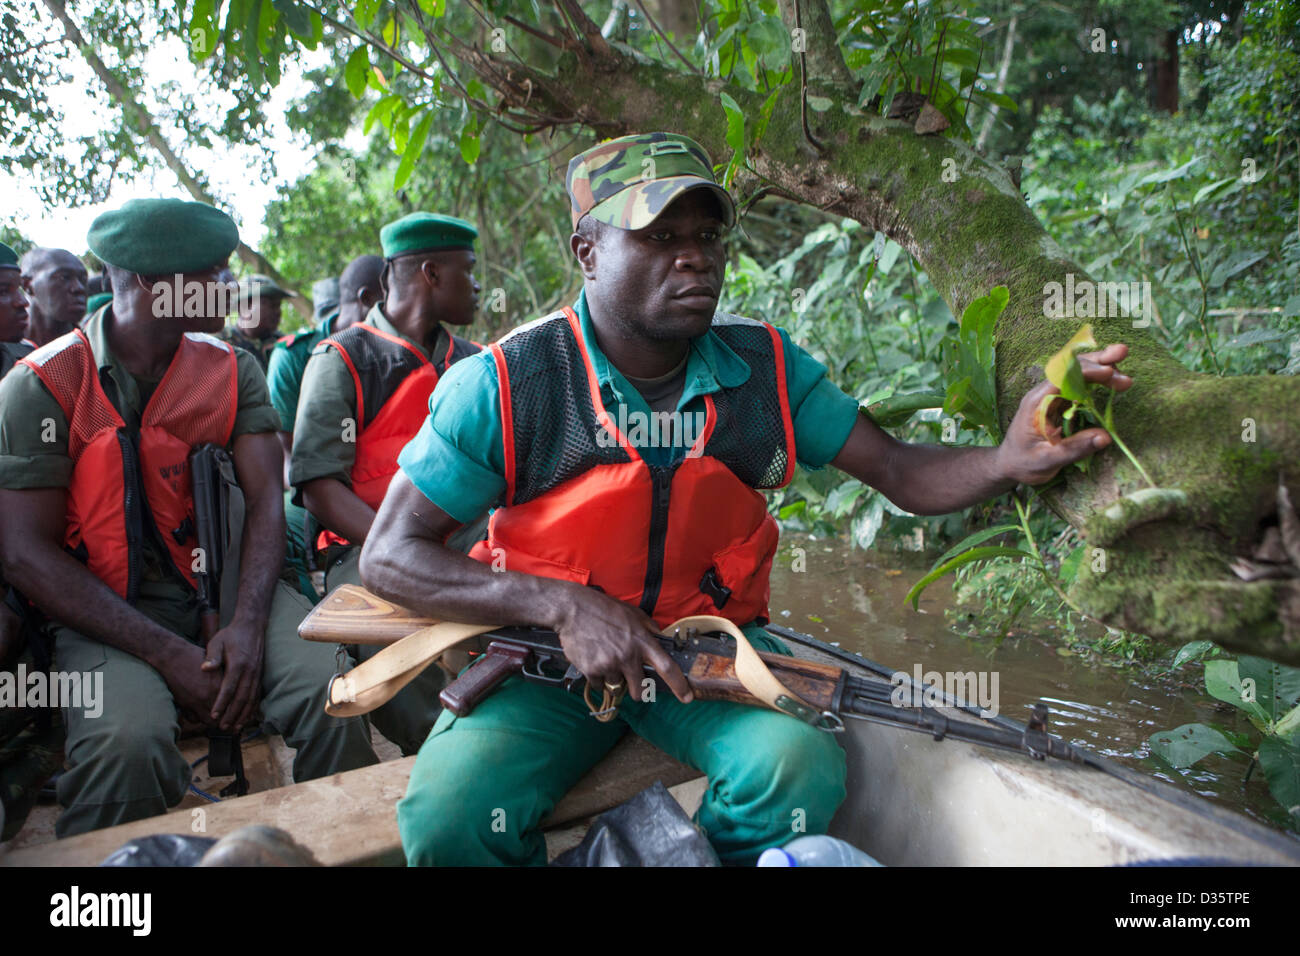 Kongo, 29. September 2012: eine Bi-nationale Gruppe von Ecoguards aus Kamerun und Gabun patrouillieren die Messok Dja-Nationalpark, auf der Suche nach Wilderern. Stockfoto